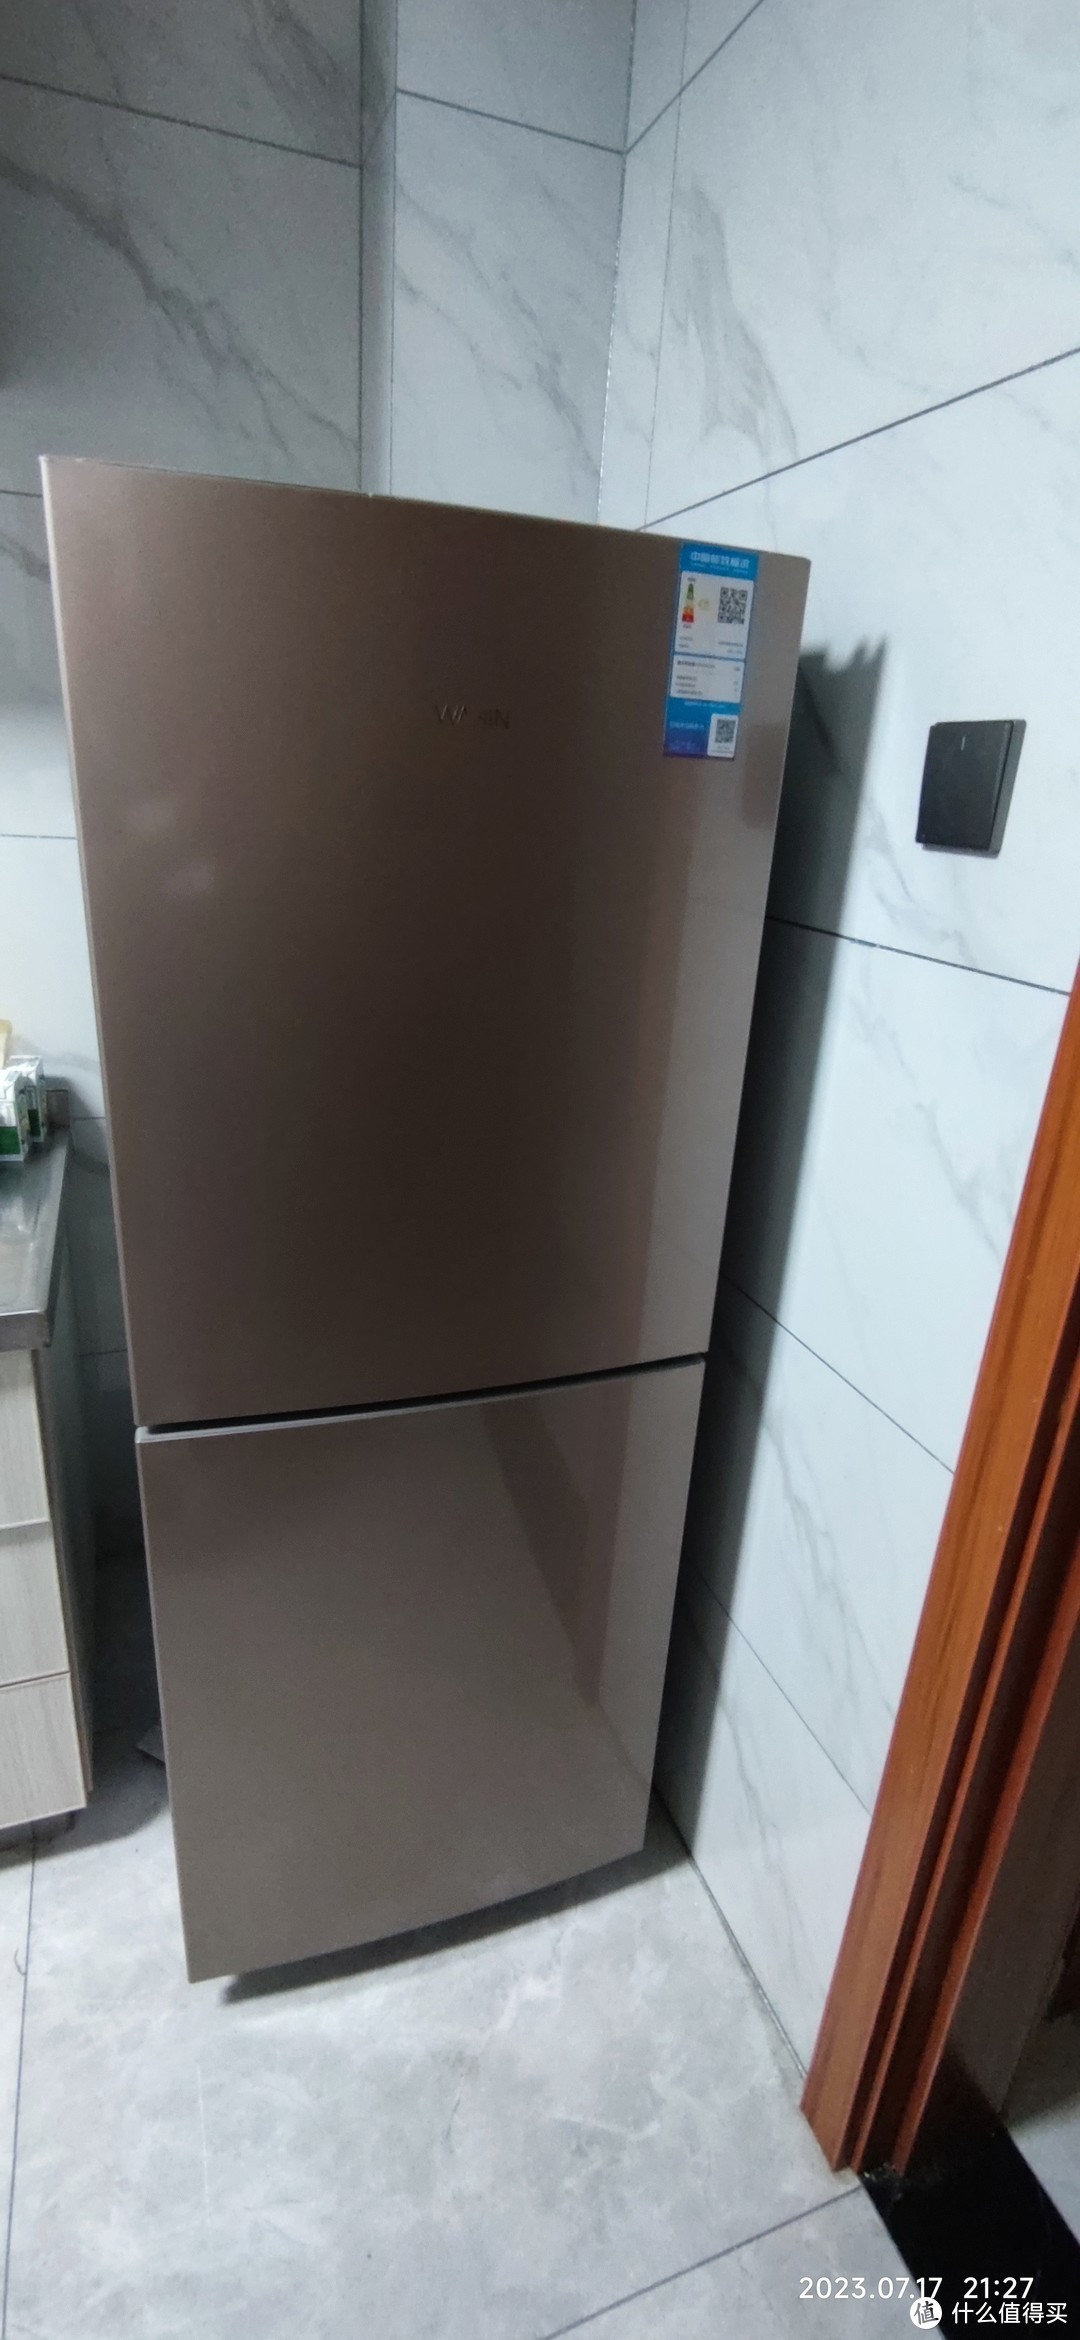 冰箱用了几年坏了，就不修了，直接换一个吧。